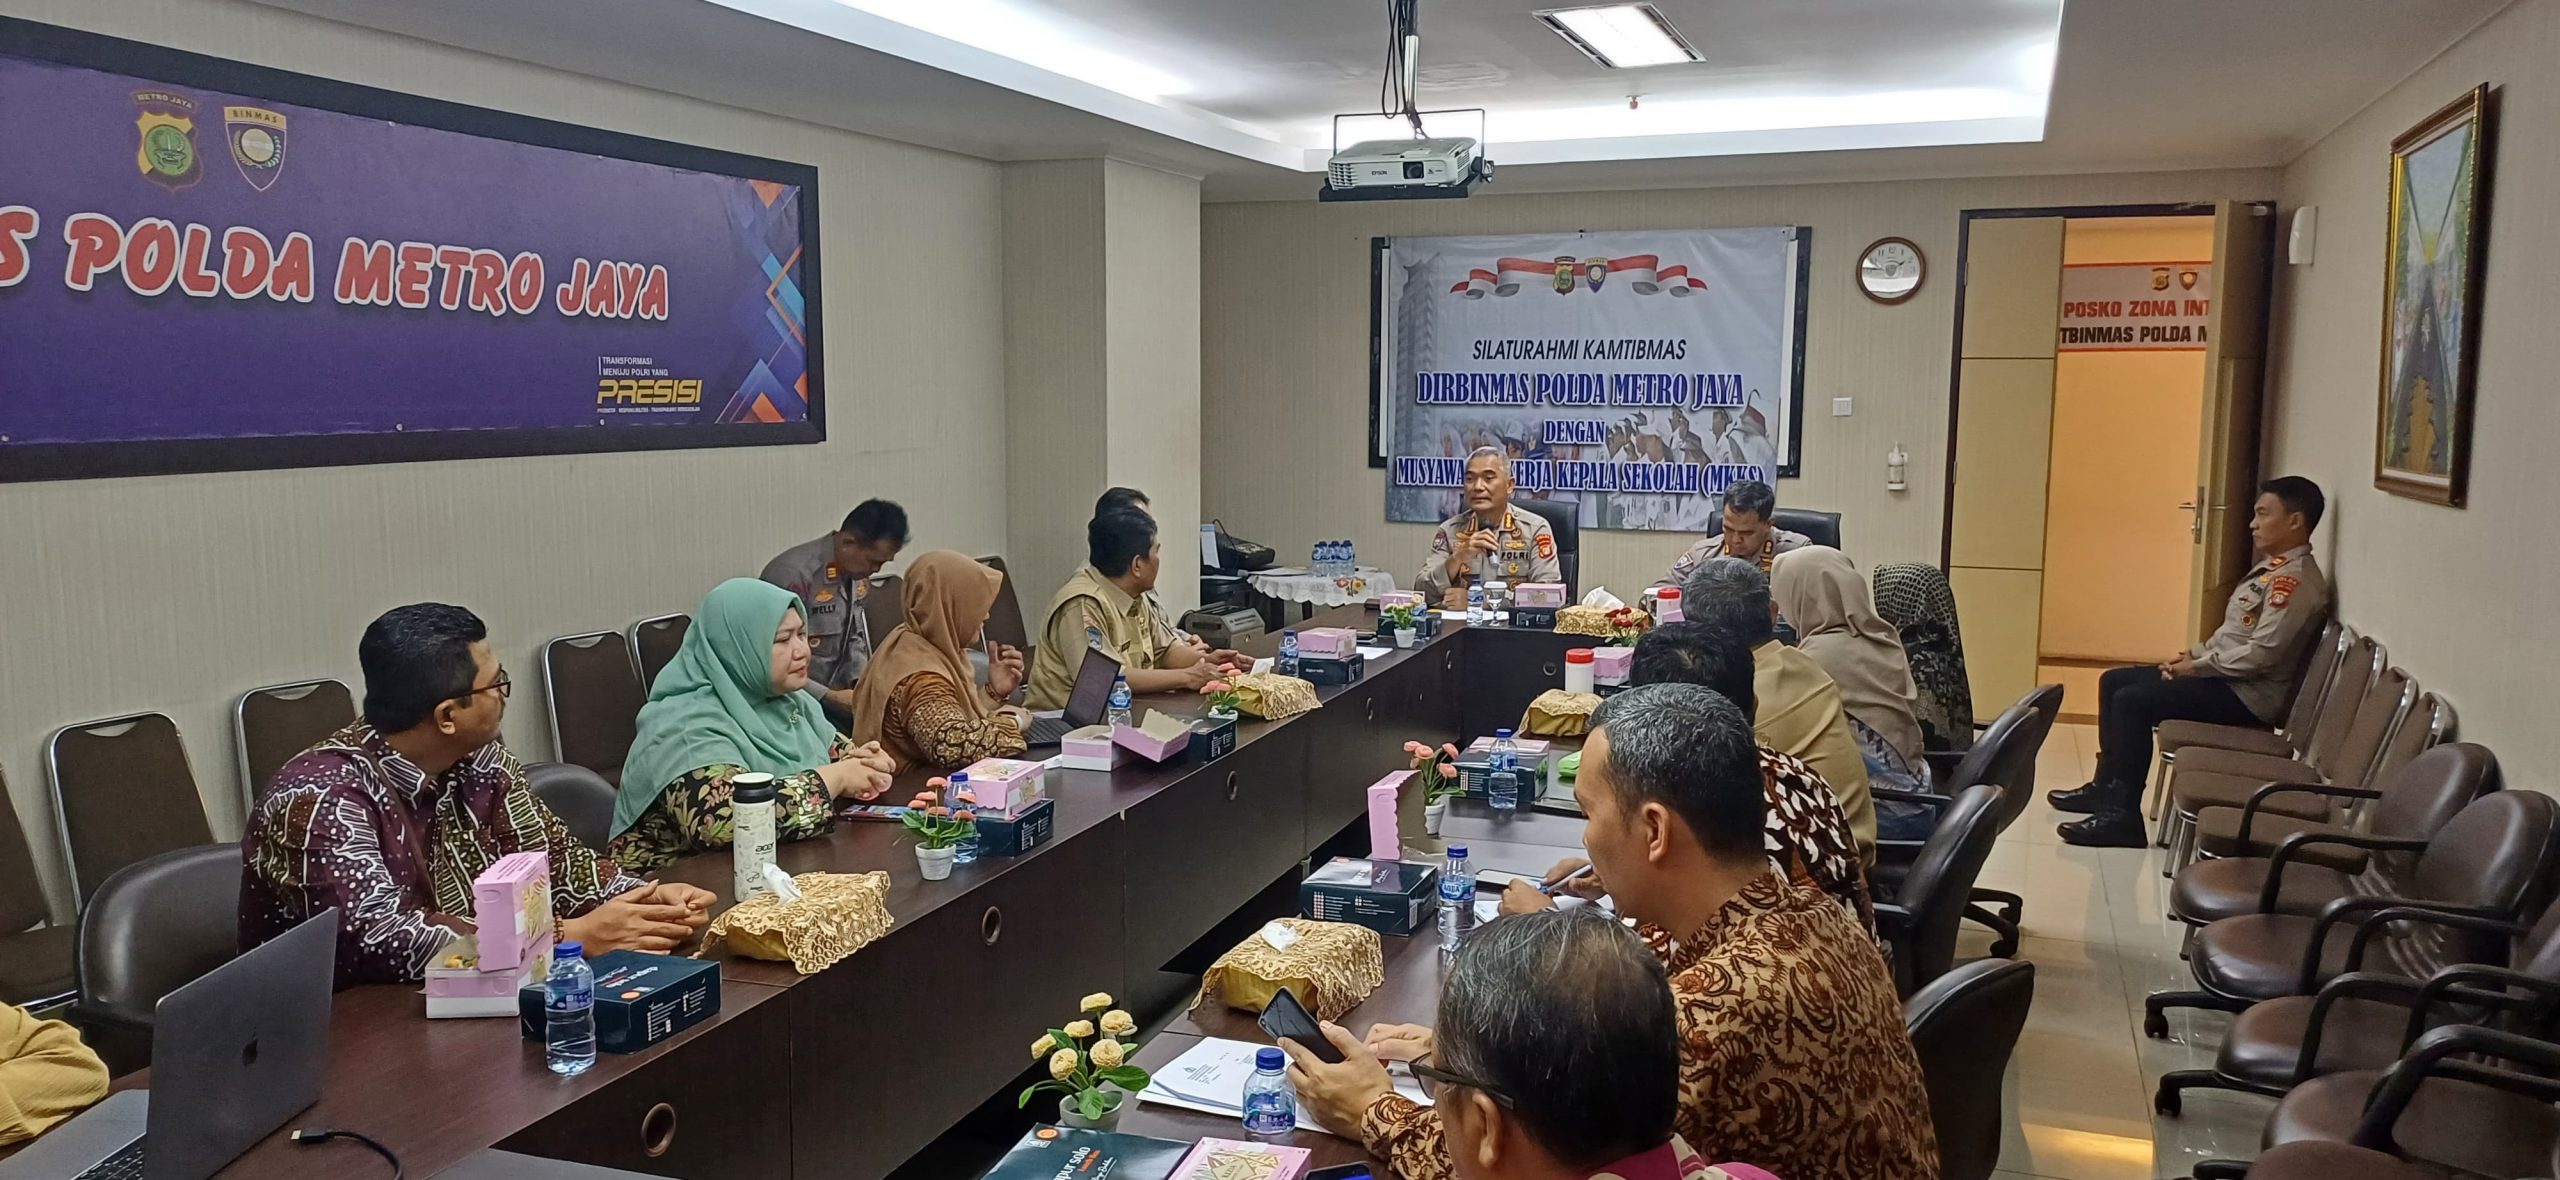 Cegah Tawuran, Polda Metro Jaya Gelar Pertemuan dengan Musyawarah Kerja Kepala Sekolah